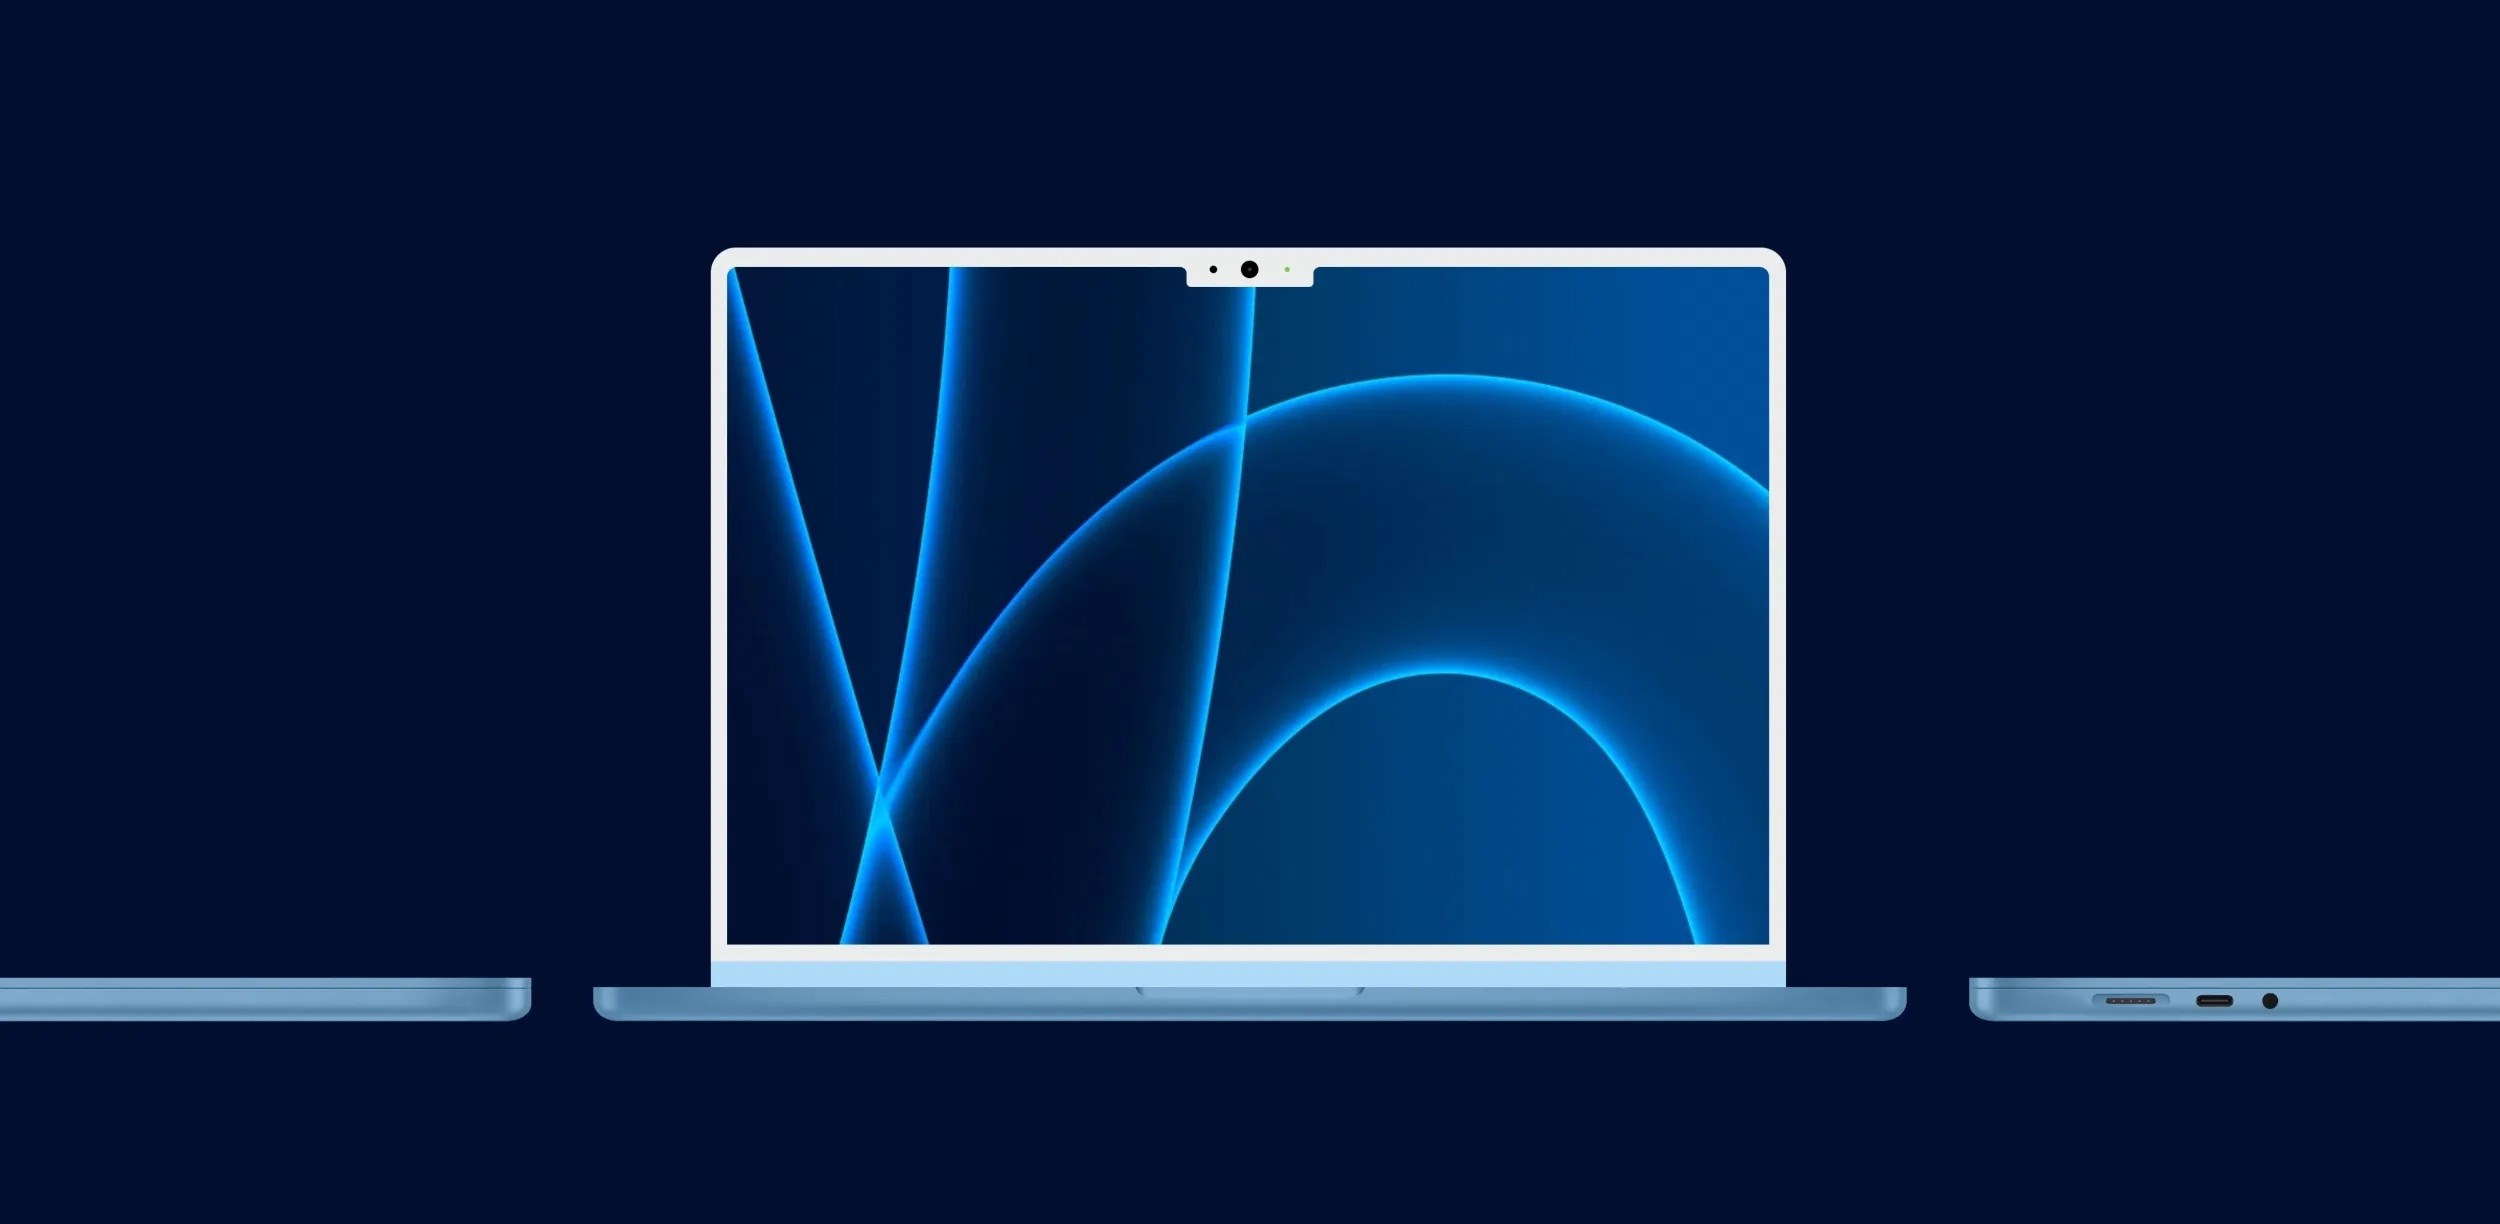 Yeni MacBook Air, koyu mavi renk seçeneği ile gelebilir